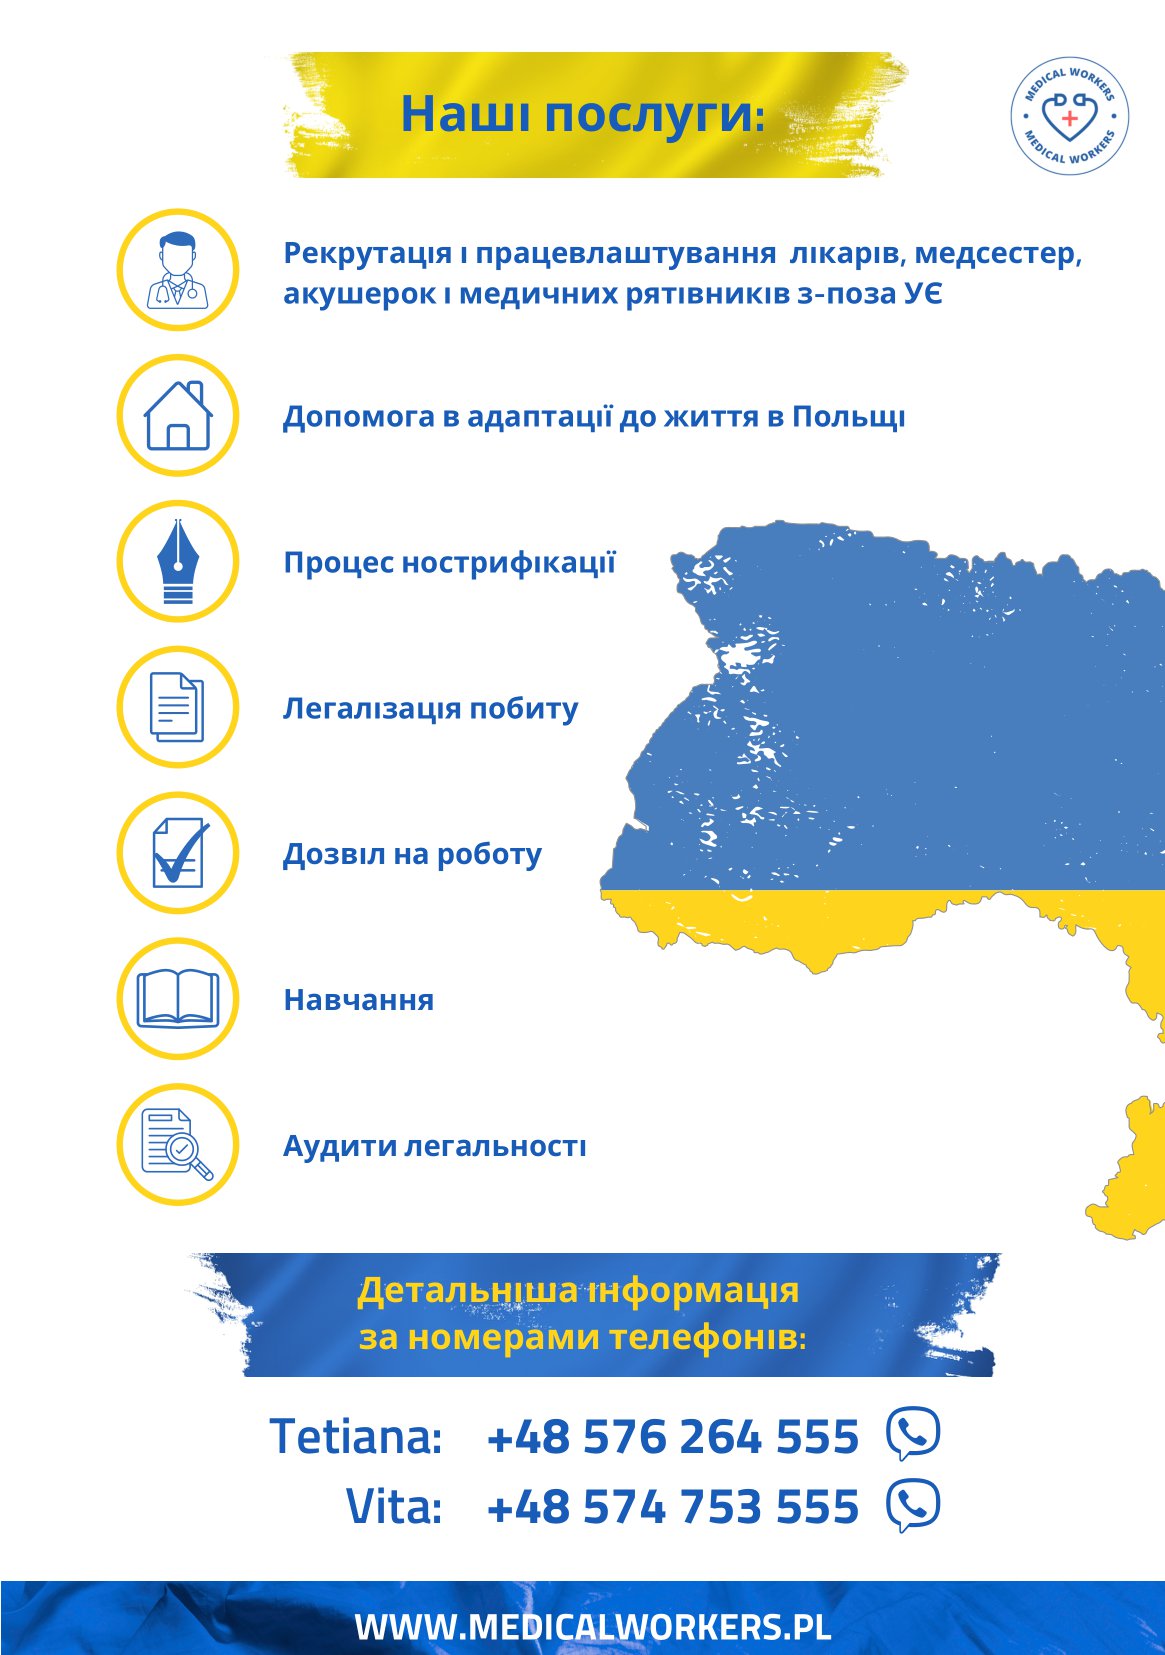 Personel medyczny - ulotka informacyjna w języku ukraińskim (strona 2)